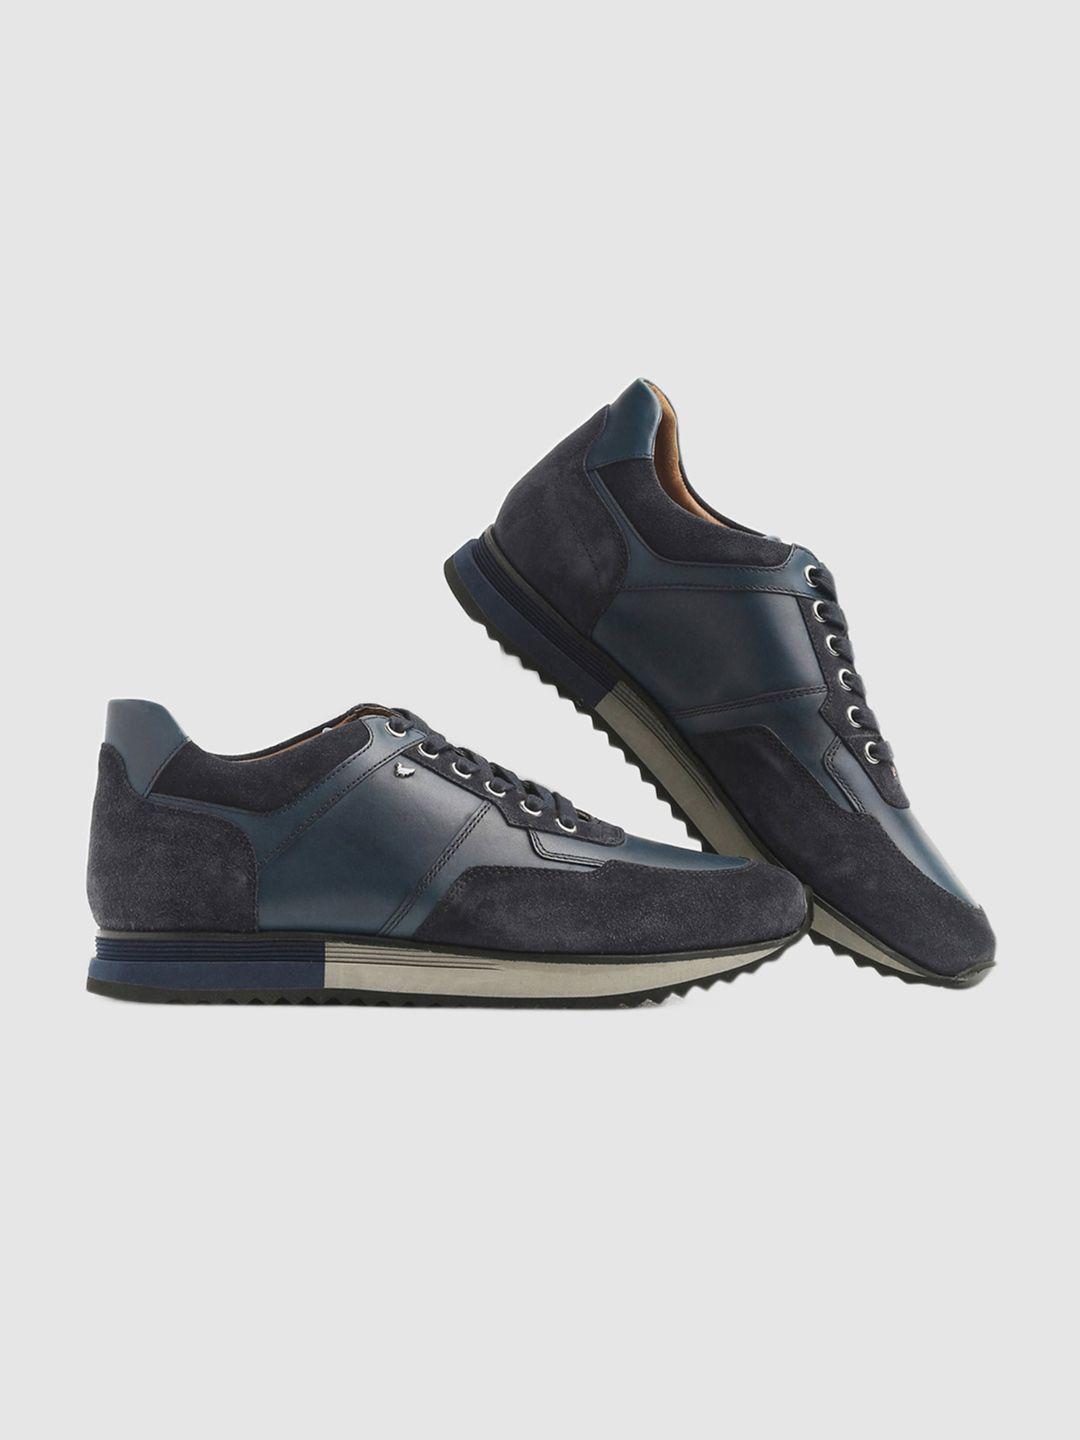 blackberrys men contrast sole leather sneakers